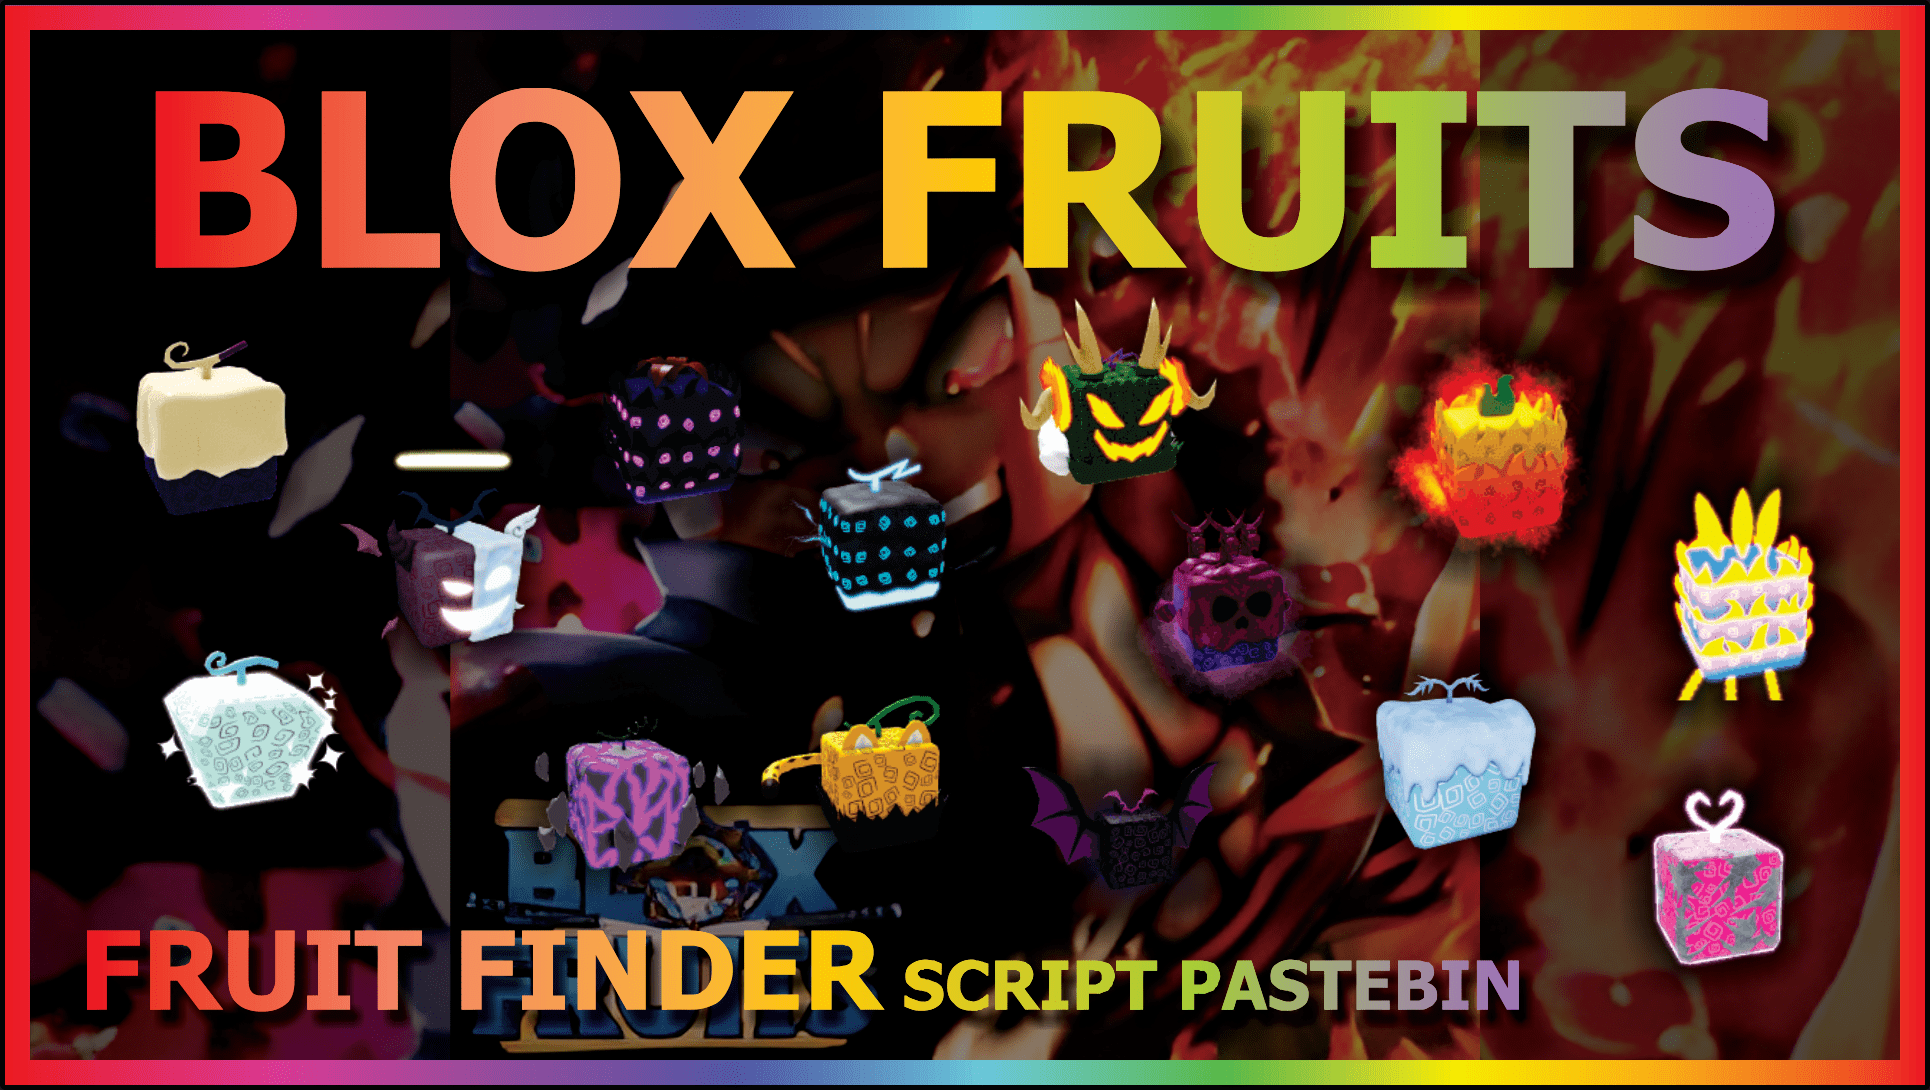 Script Blox Fruits Update Race V4 – ScriptPastebin